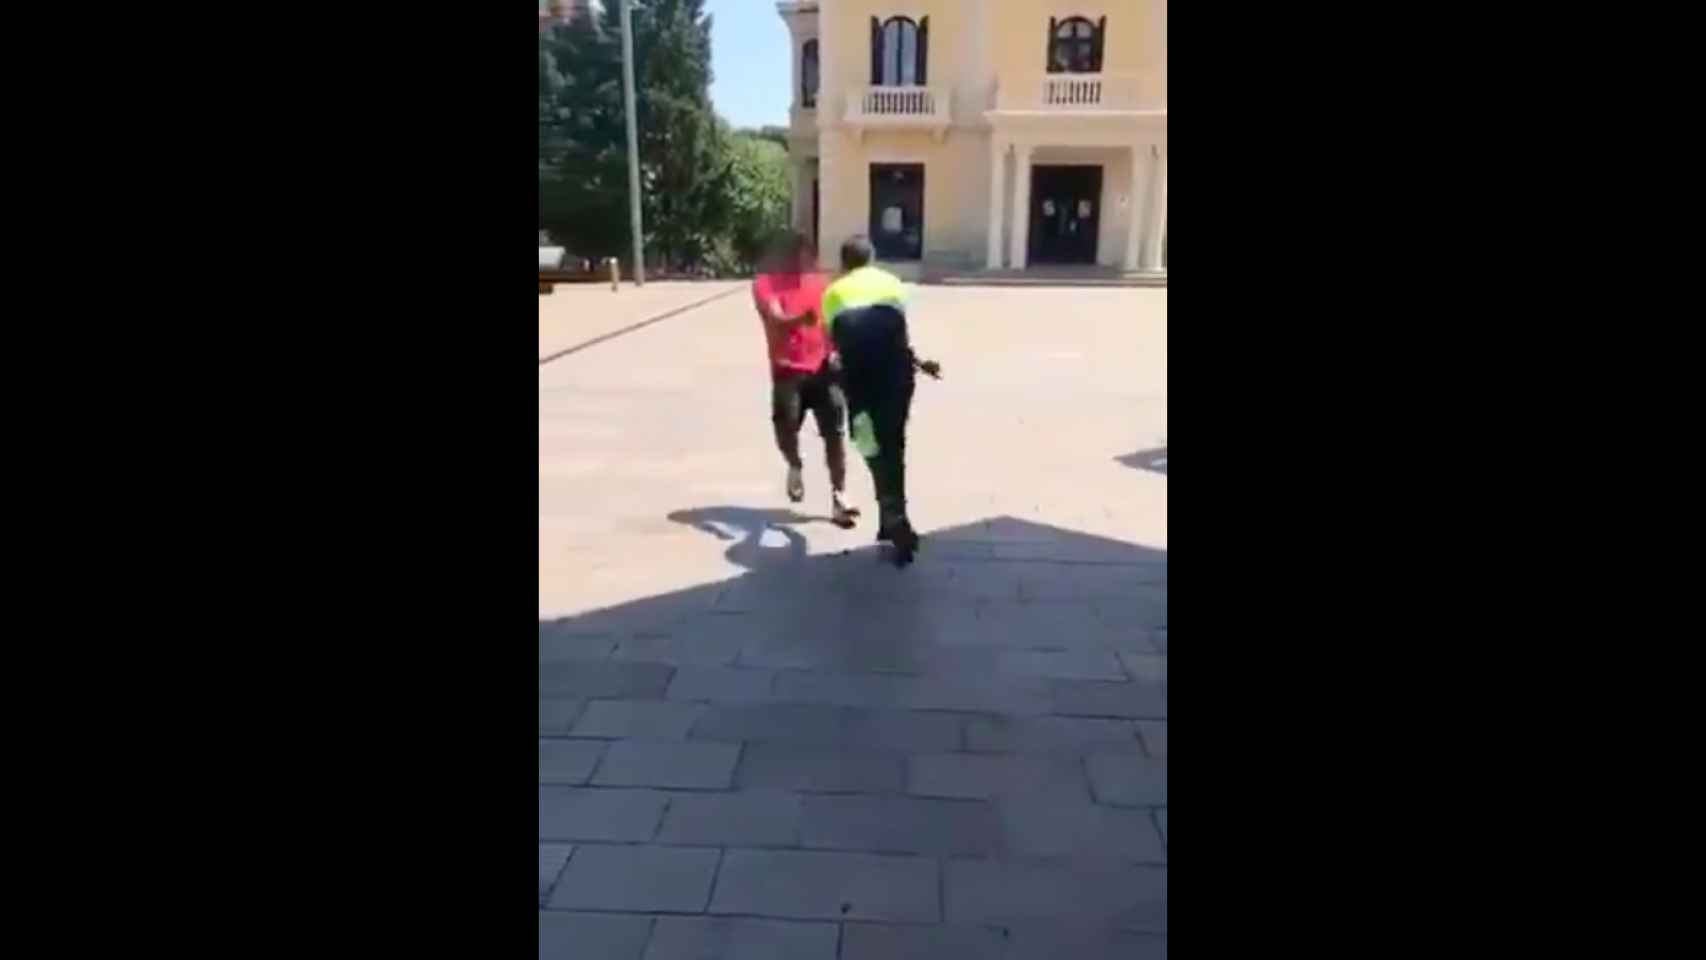 Agresión racista en Sant Cugat: un vigilante insulta y tira al suelo a un hombre / CUP Sant Cugat